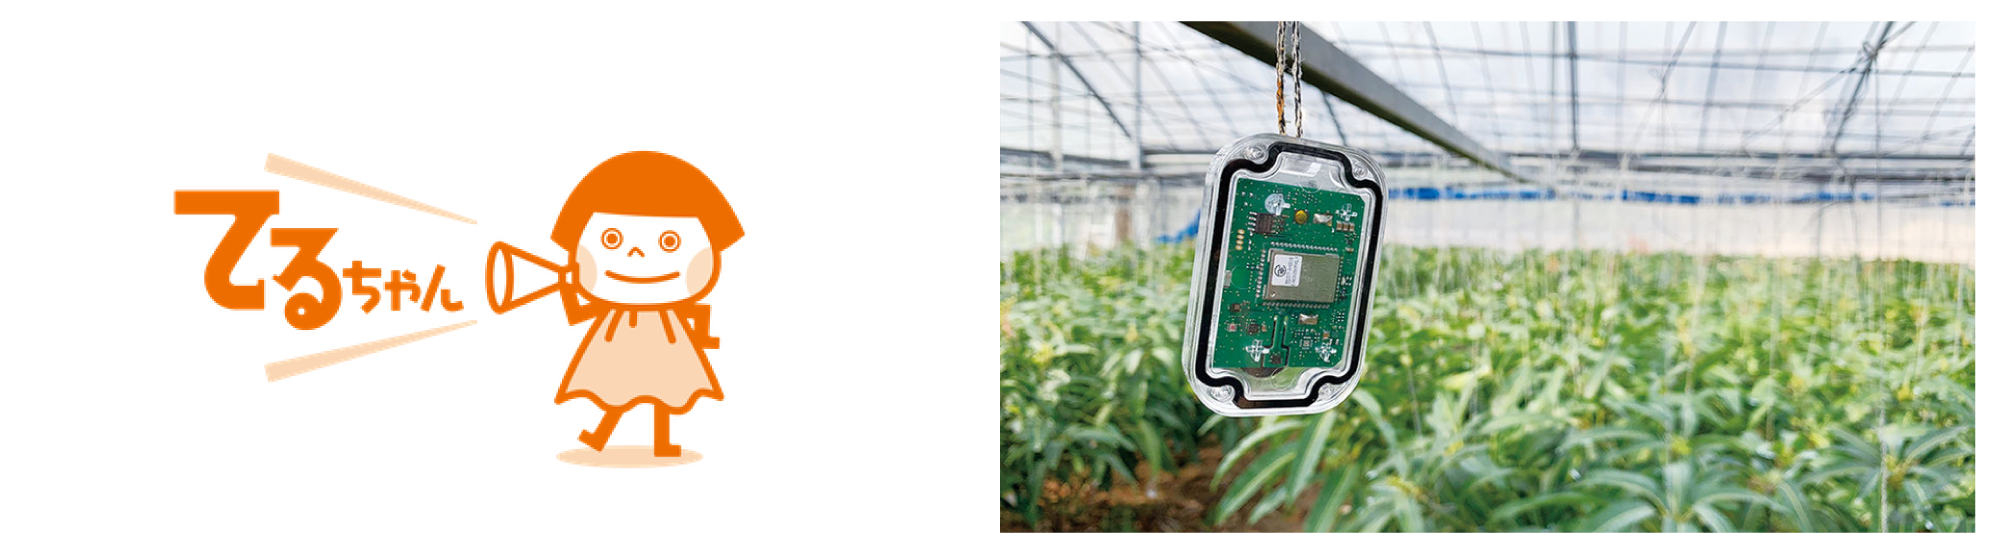 農業IoTデバイス「てるちゃん」。圃場の温度・湿度・照度に異常があれば電話やメール、SMSに通知する。